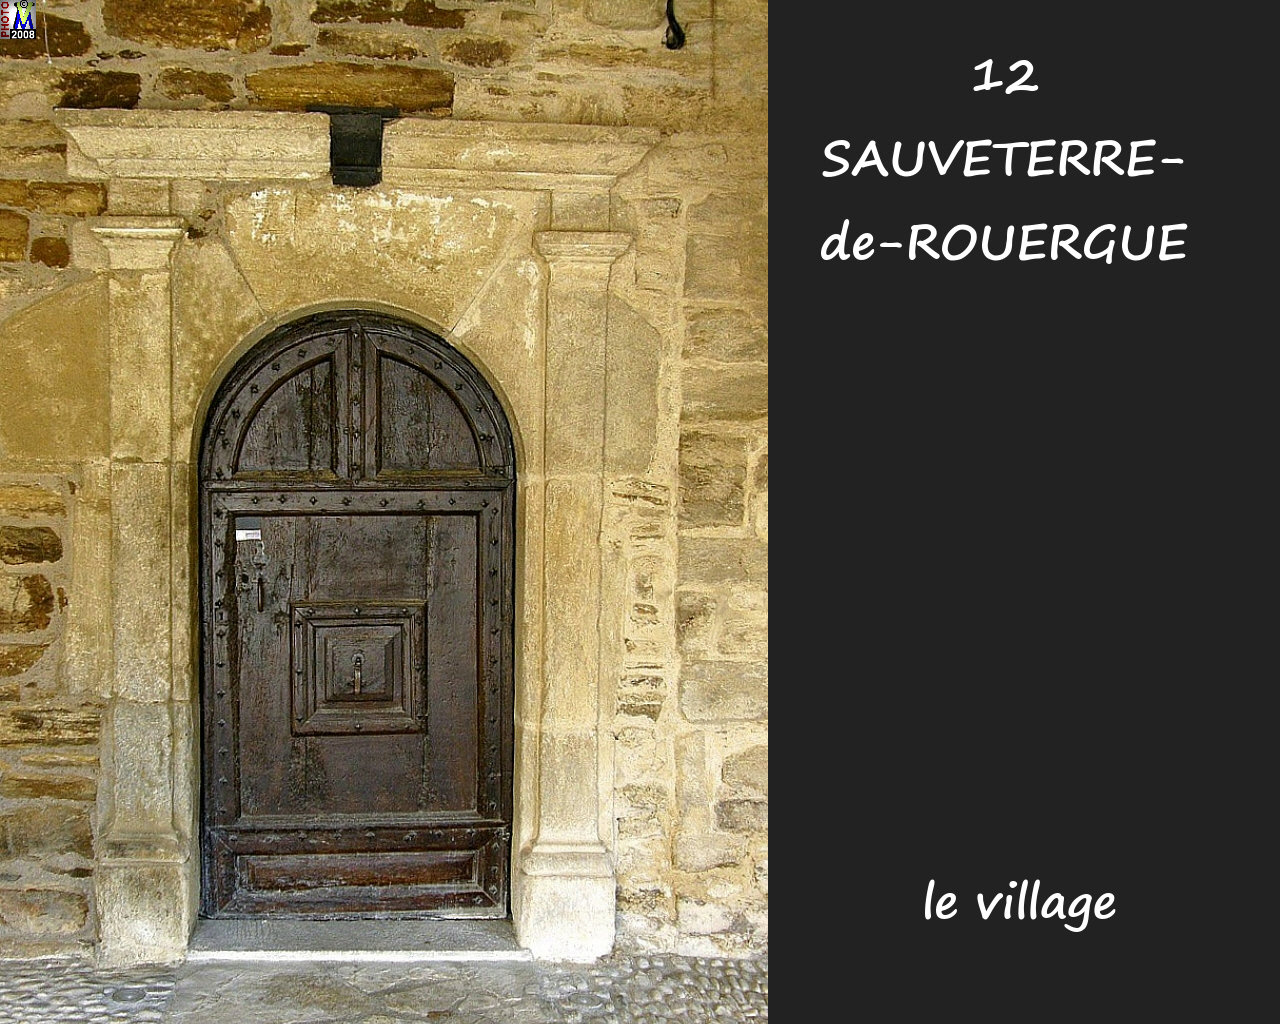 12SAUVETERRE-ROUERGUE_village_194.jpg